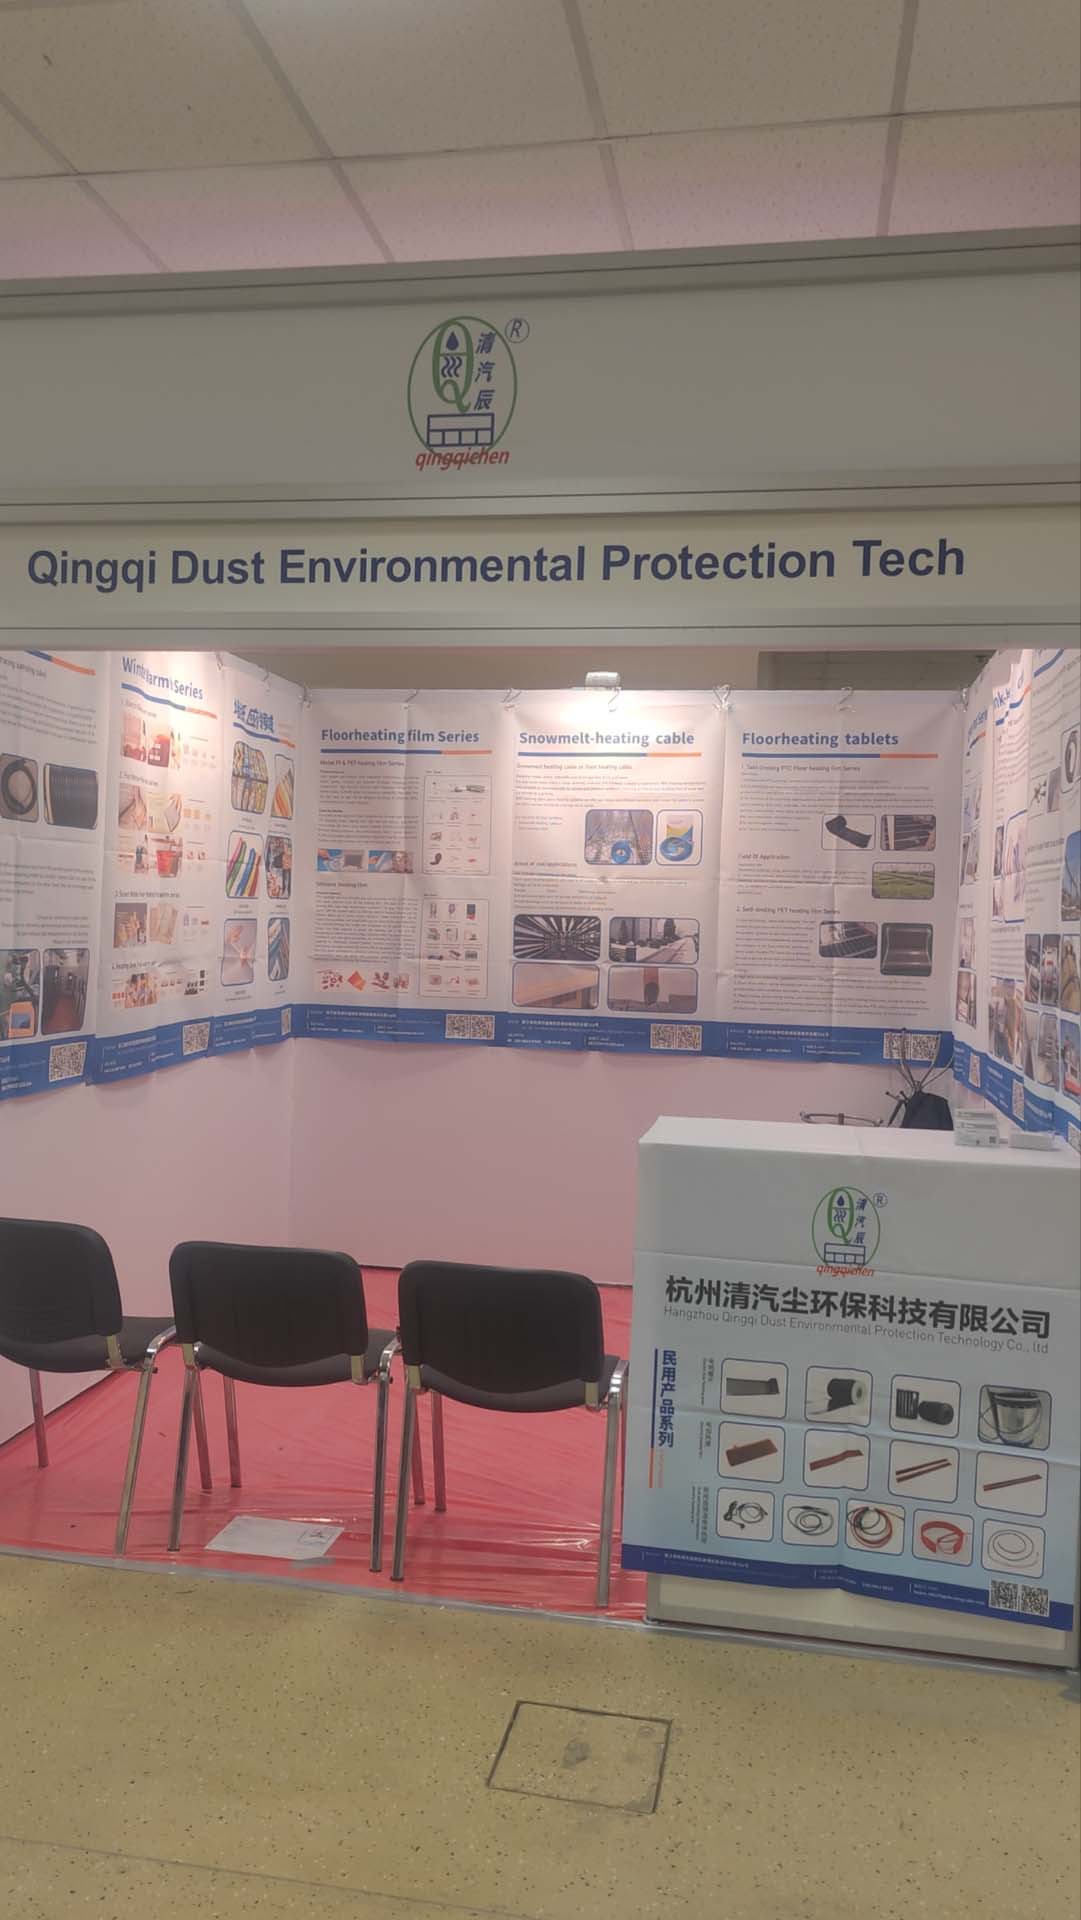  Hangzhou Qingqi Dust Environmental Protection Technology Co., Ltd. op 19-21 maart CabeX-tentoonstelling in Moskou, Rusland, welkom Russische vrienden op de tentoonstelling om advies uit te wisselen en te onderhandelen 